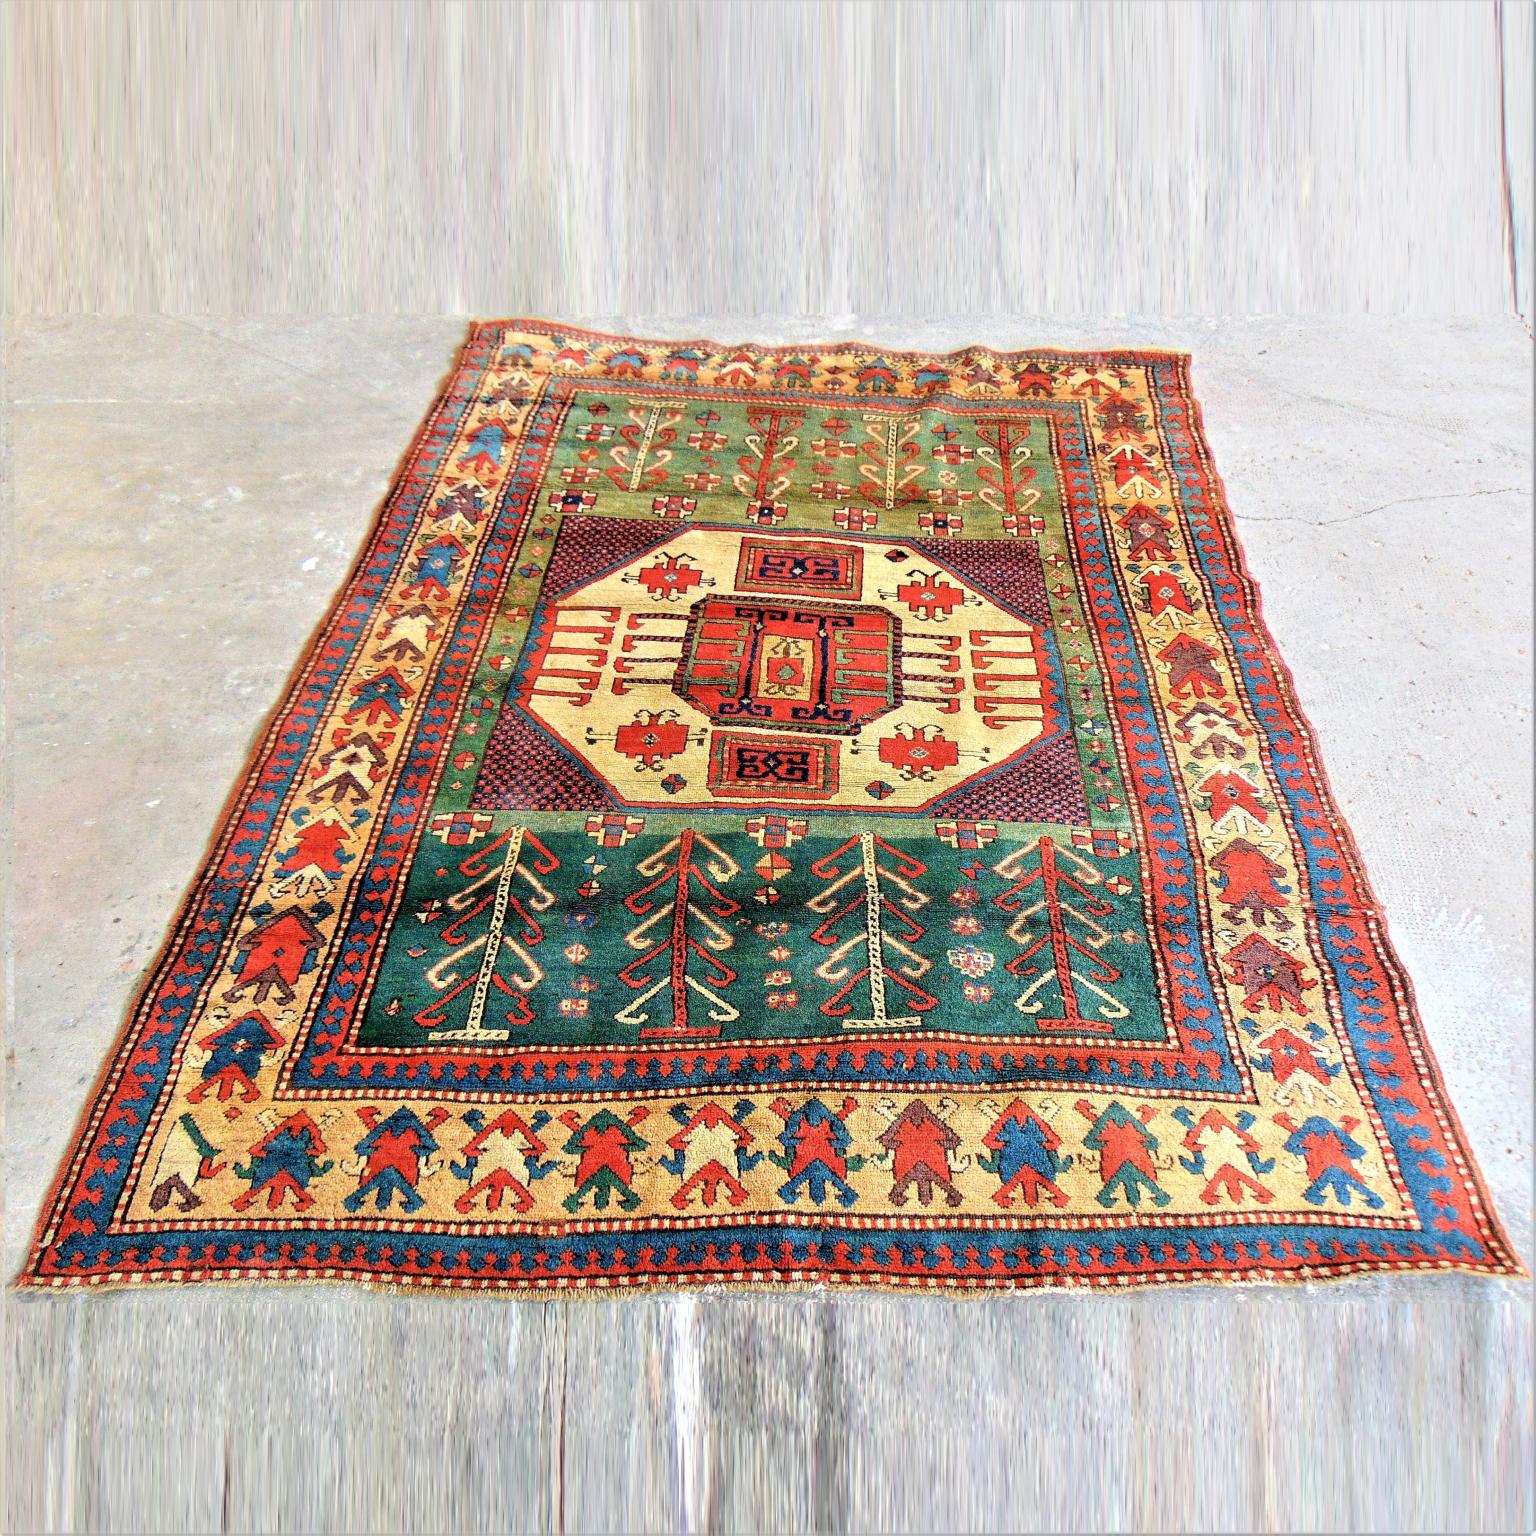 Dieser Teppich weist alle Merkmale der bekanntesten Karaciof-Teppiche auf, mit dem typischen beigen, achteckigen Zentralmedaillon. Wie üblich sticht das mächtige Achteck auf dem klassischen rot-blauen Schachbrettmuster hervor. Vier rote und blaue